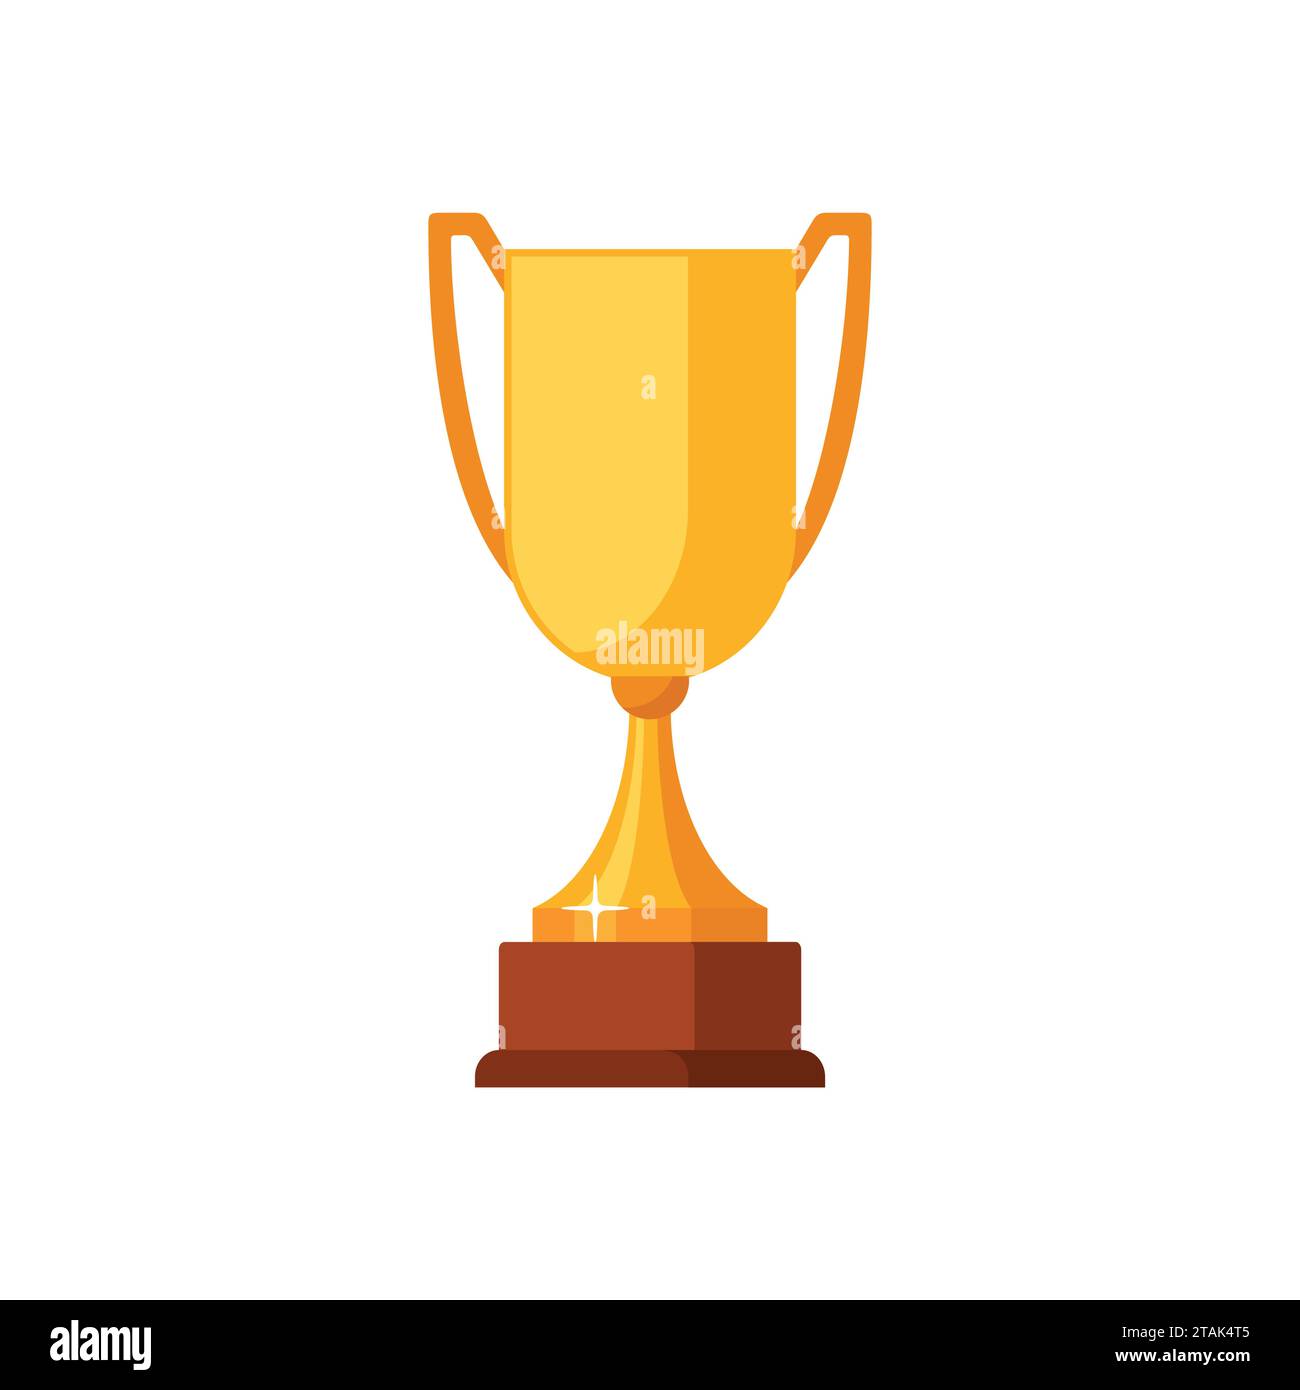 Coppa vincitrice d'oro con base in legno isolata su sfondo bianco. Icona del premio oro illustrazione vettoriale Illustrazione Vettoriale